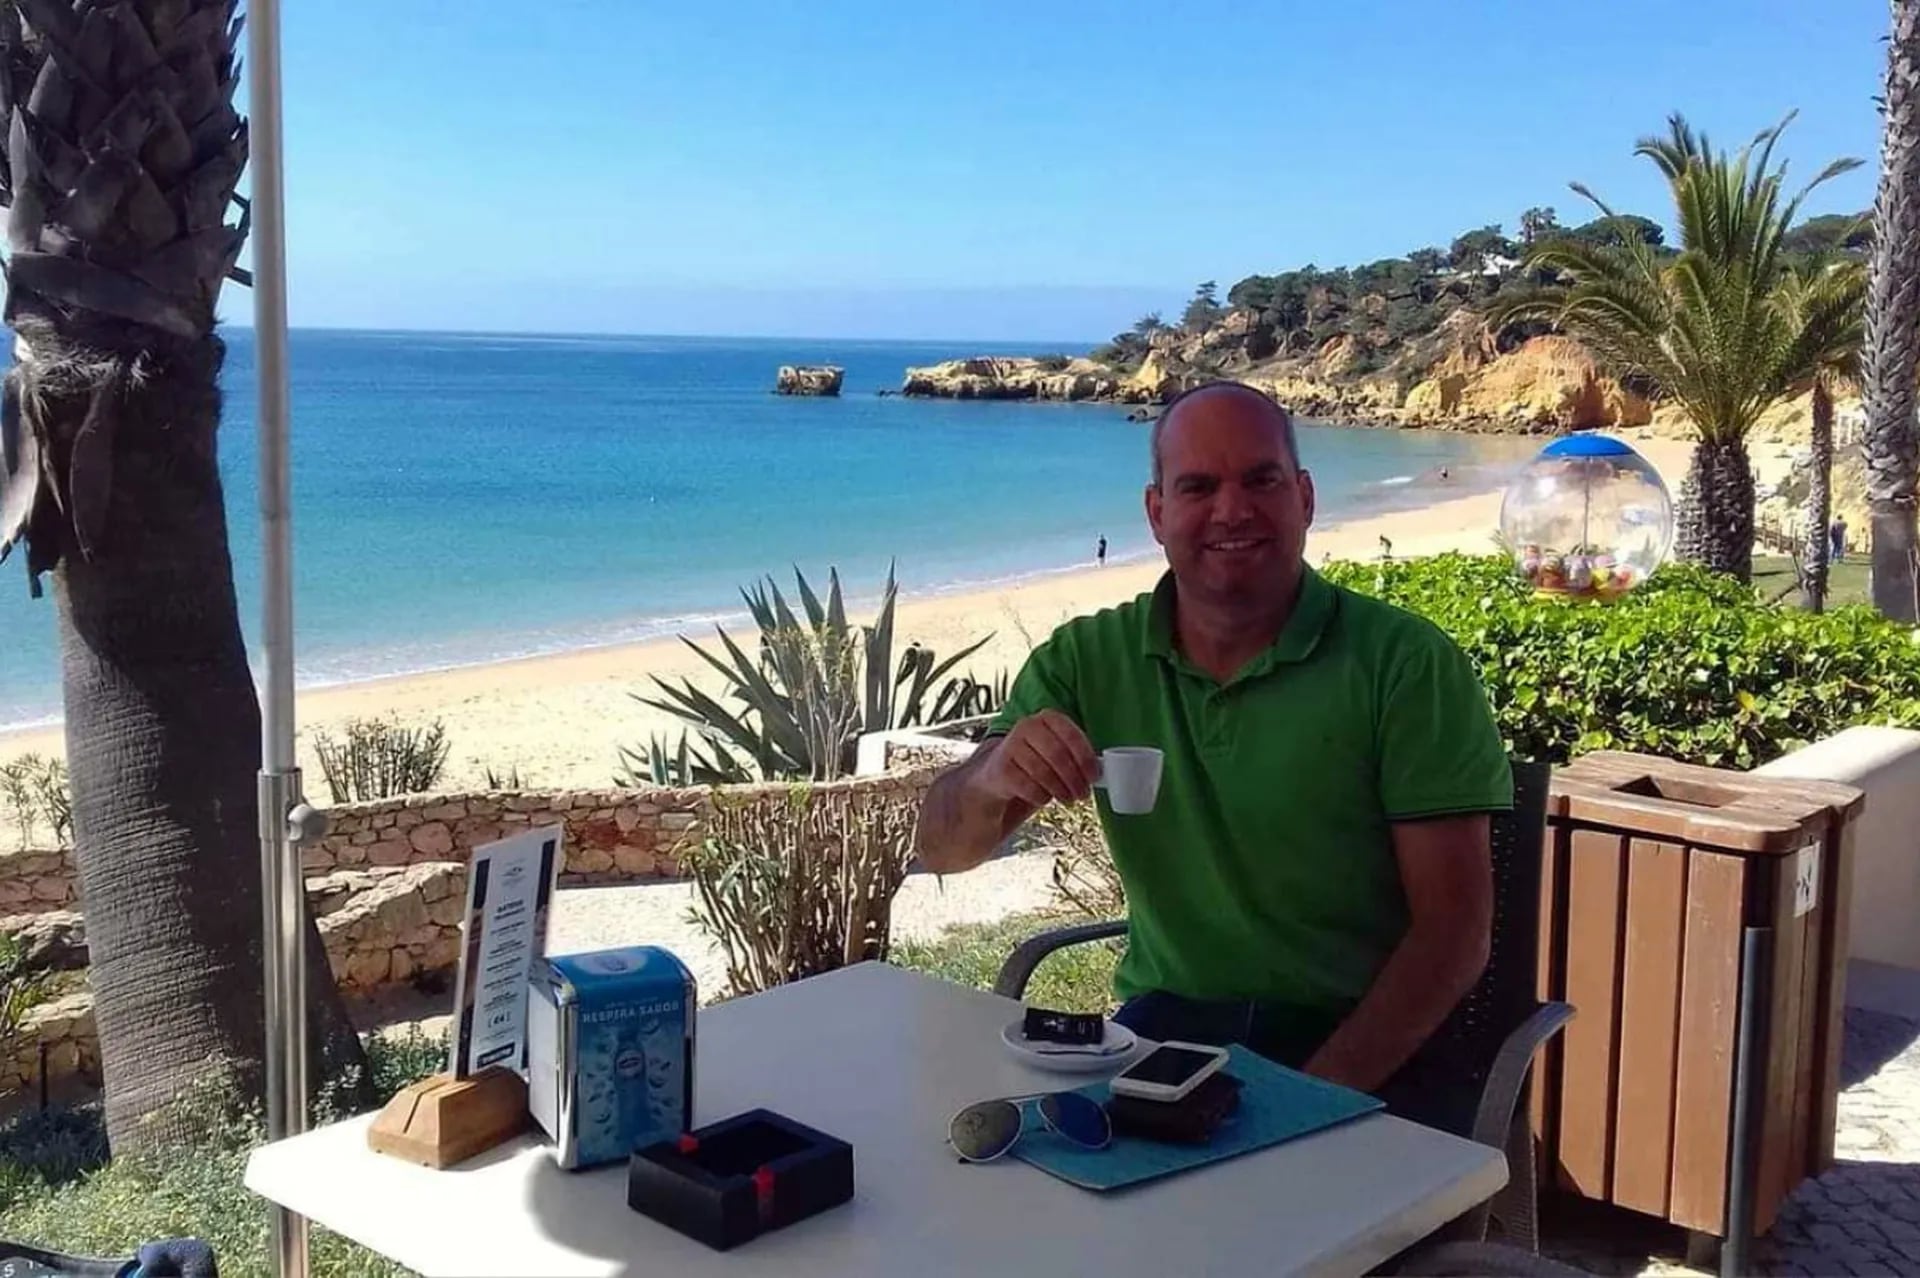 O meu cantinho preferido em Portugal: a praia paradisíaca onde o presidente também vai